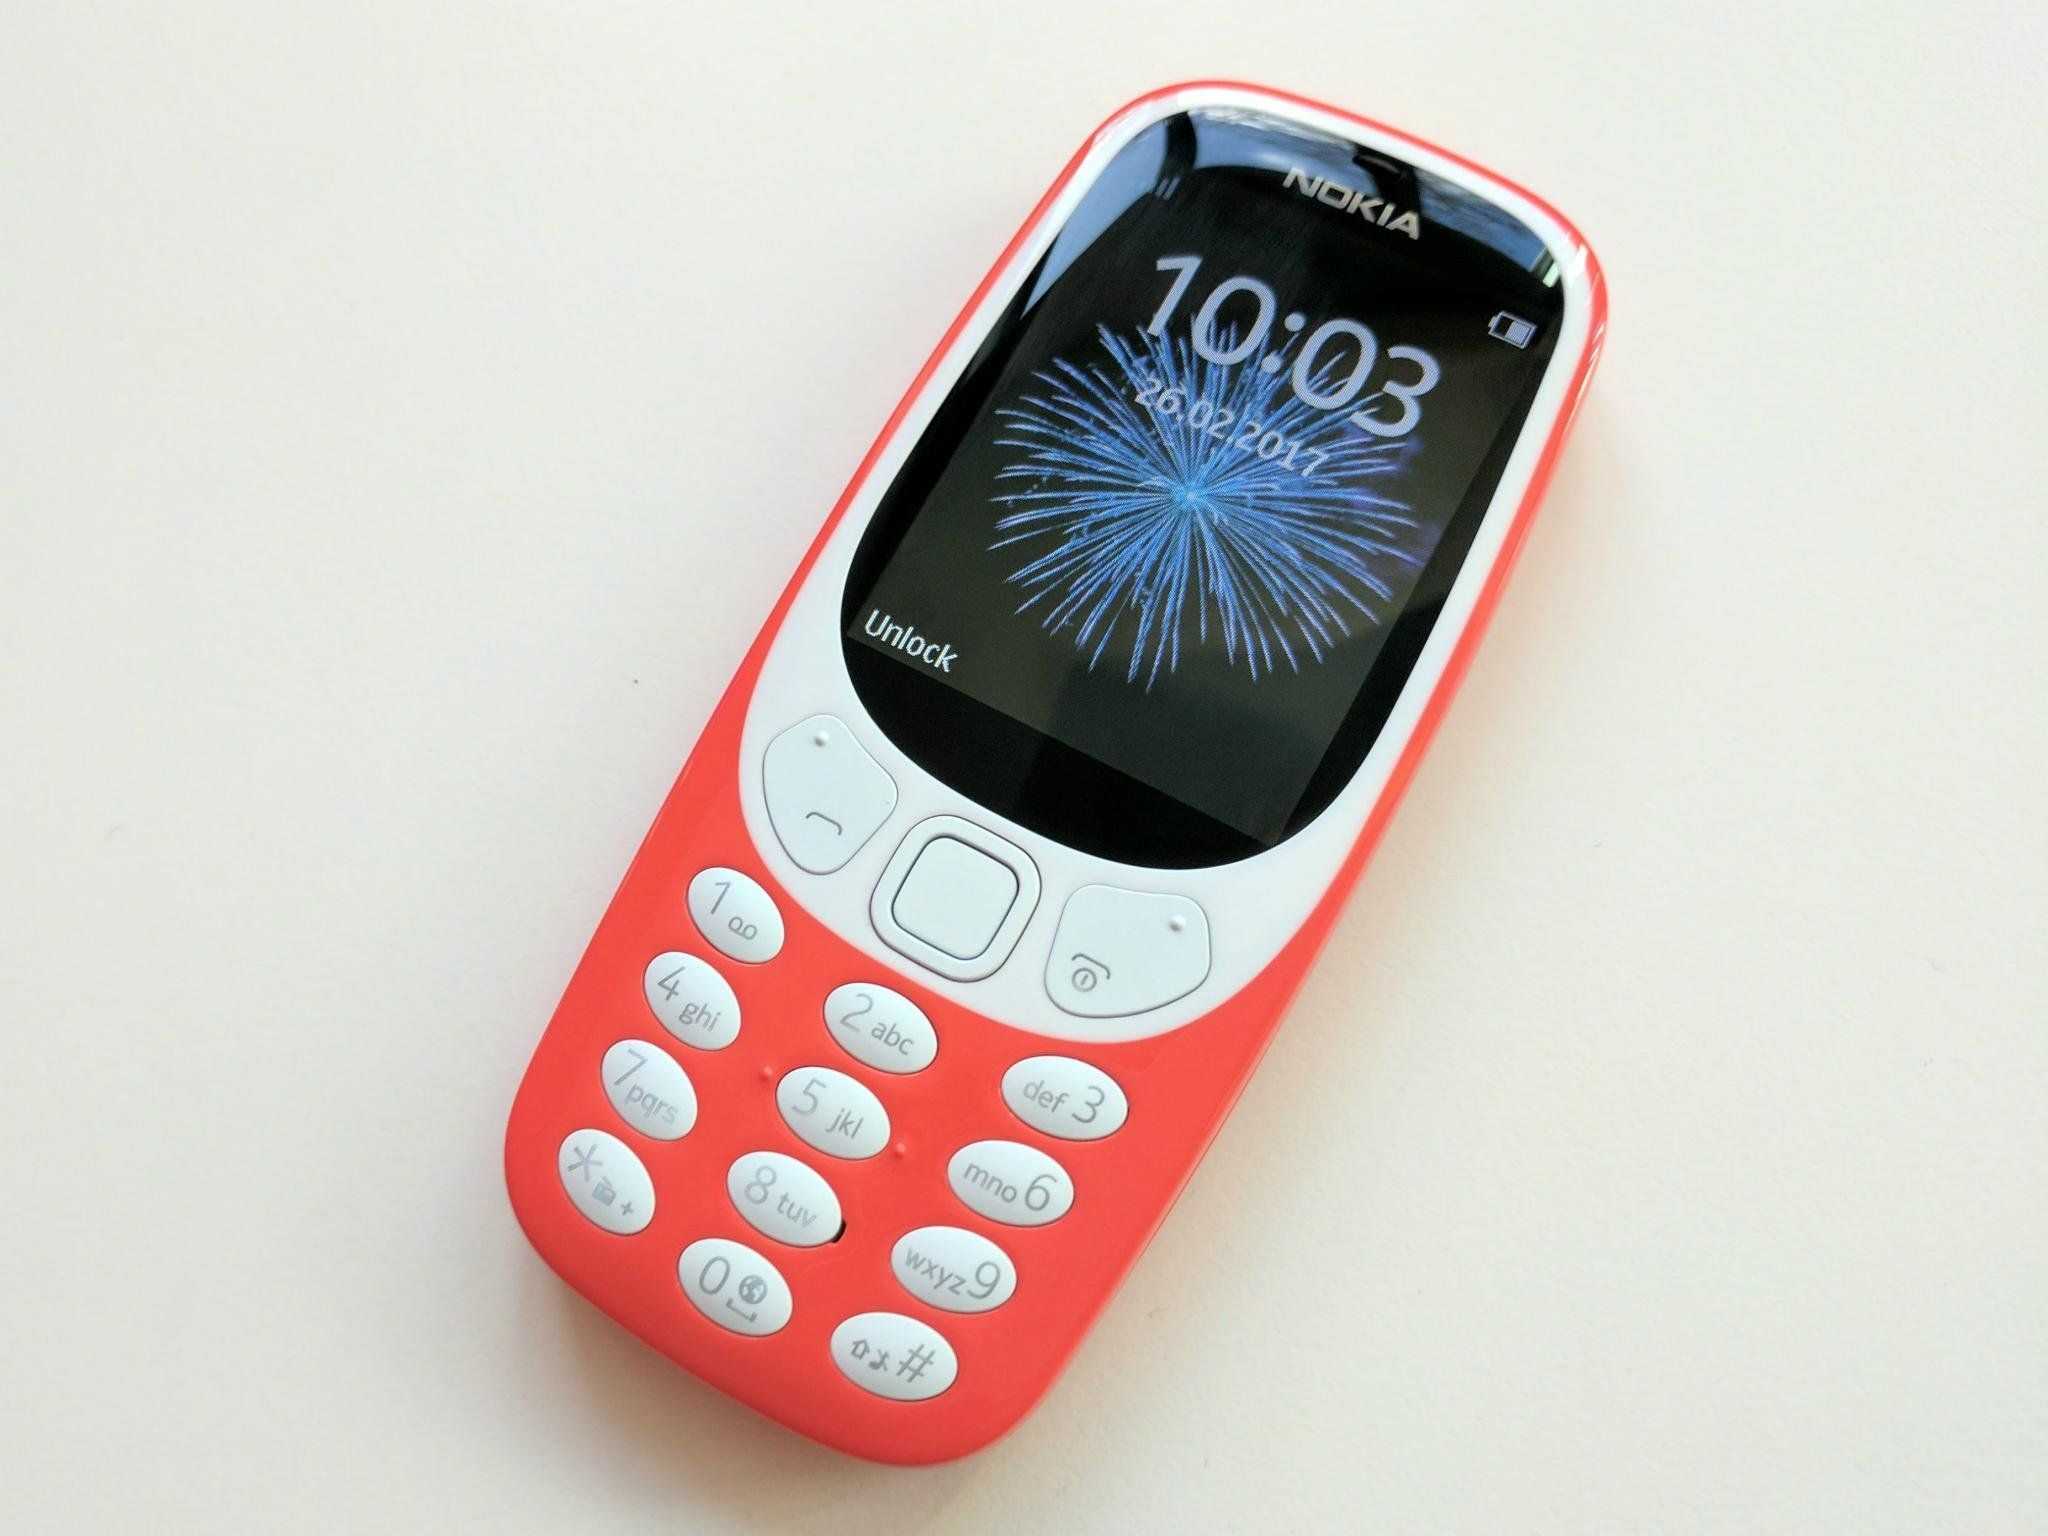 Мобильный телефон nokia 3310 dual sim купить в минске — цены в интернет магазине 7745.by